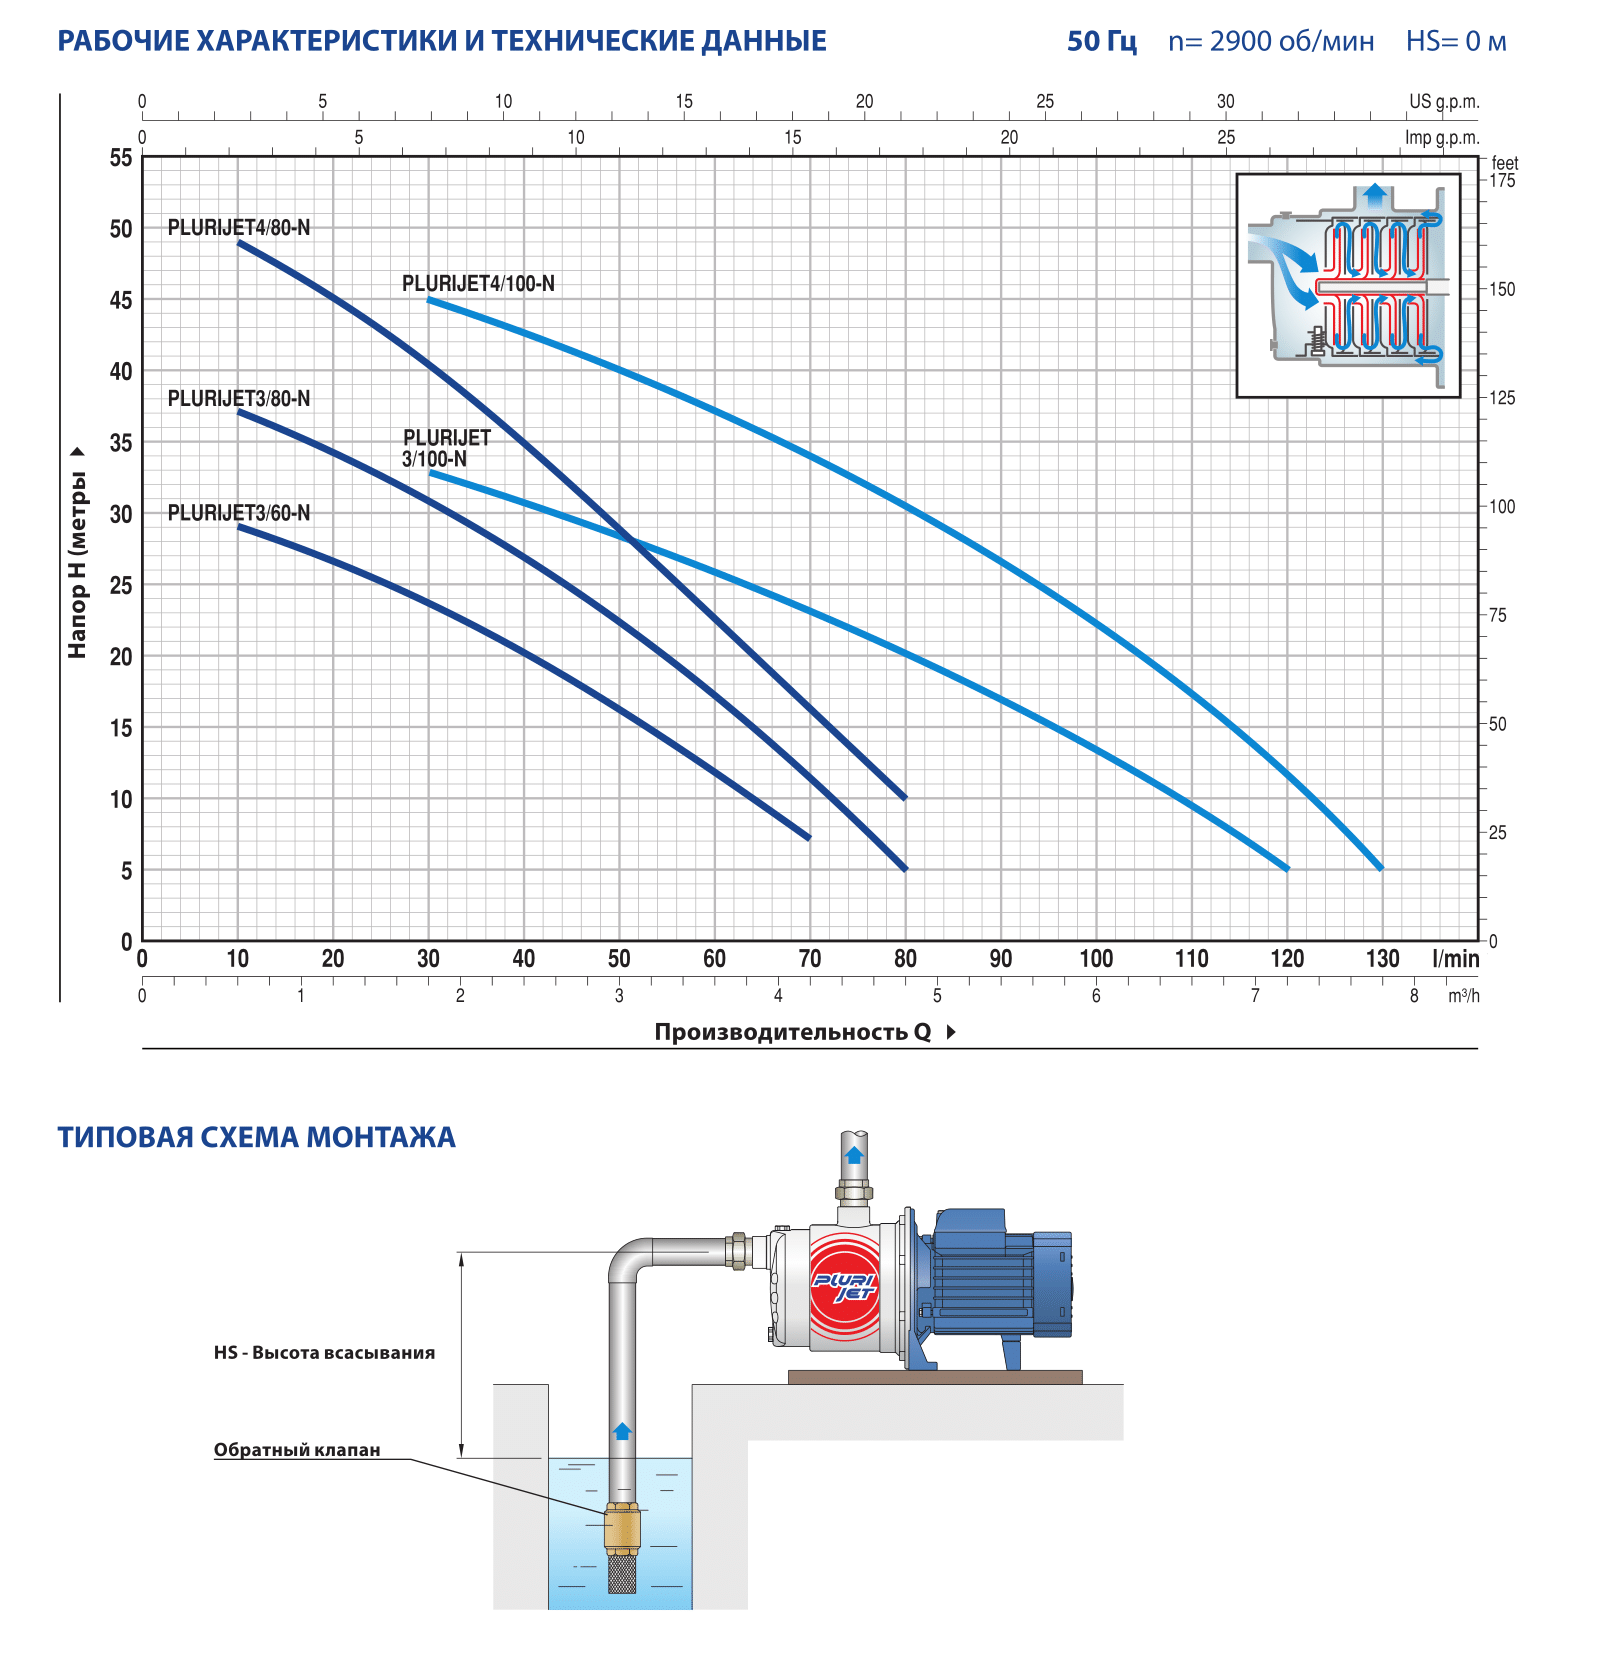 Pompa electrica centrifuga cu mai multe etape Pedrollo PLURIJETm5-200